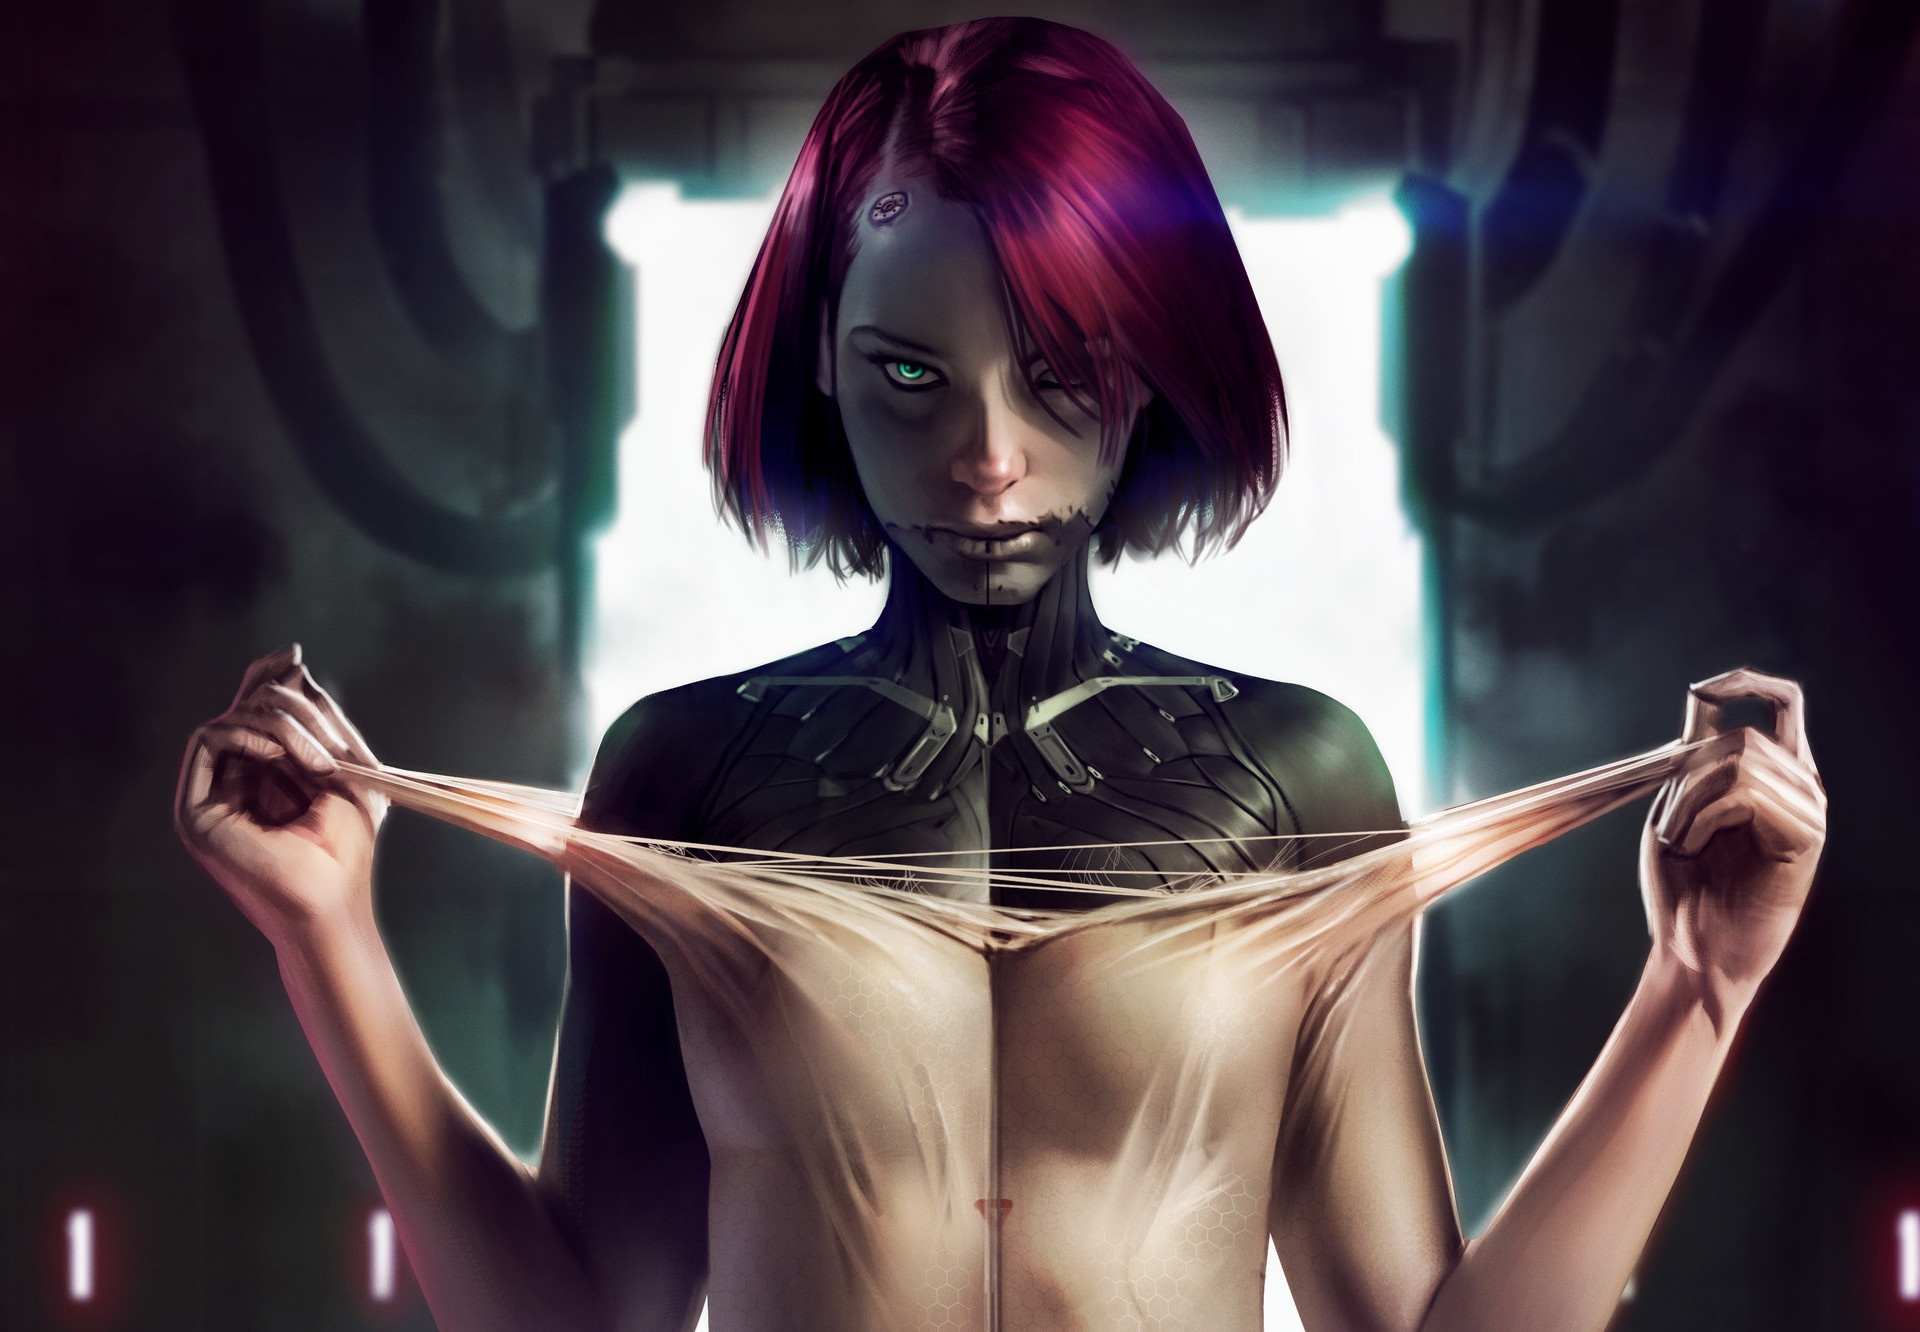 Cyberpunk woman art (120) фото